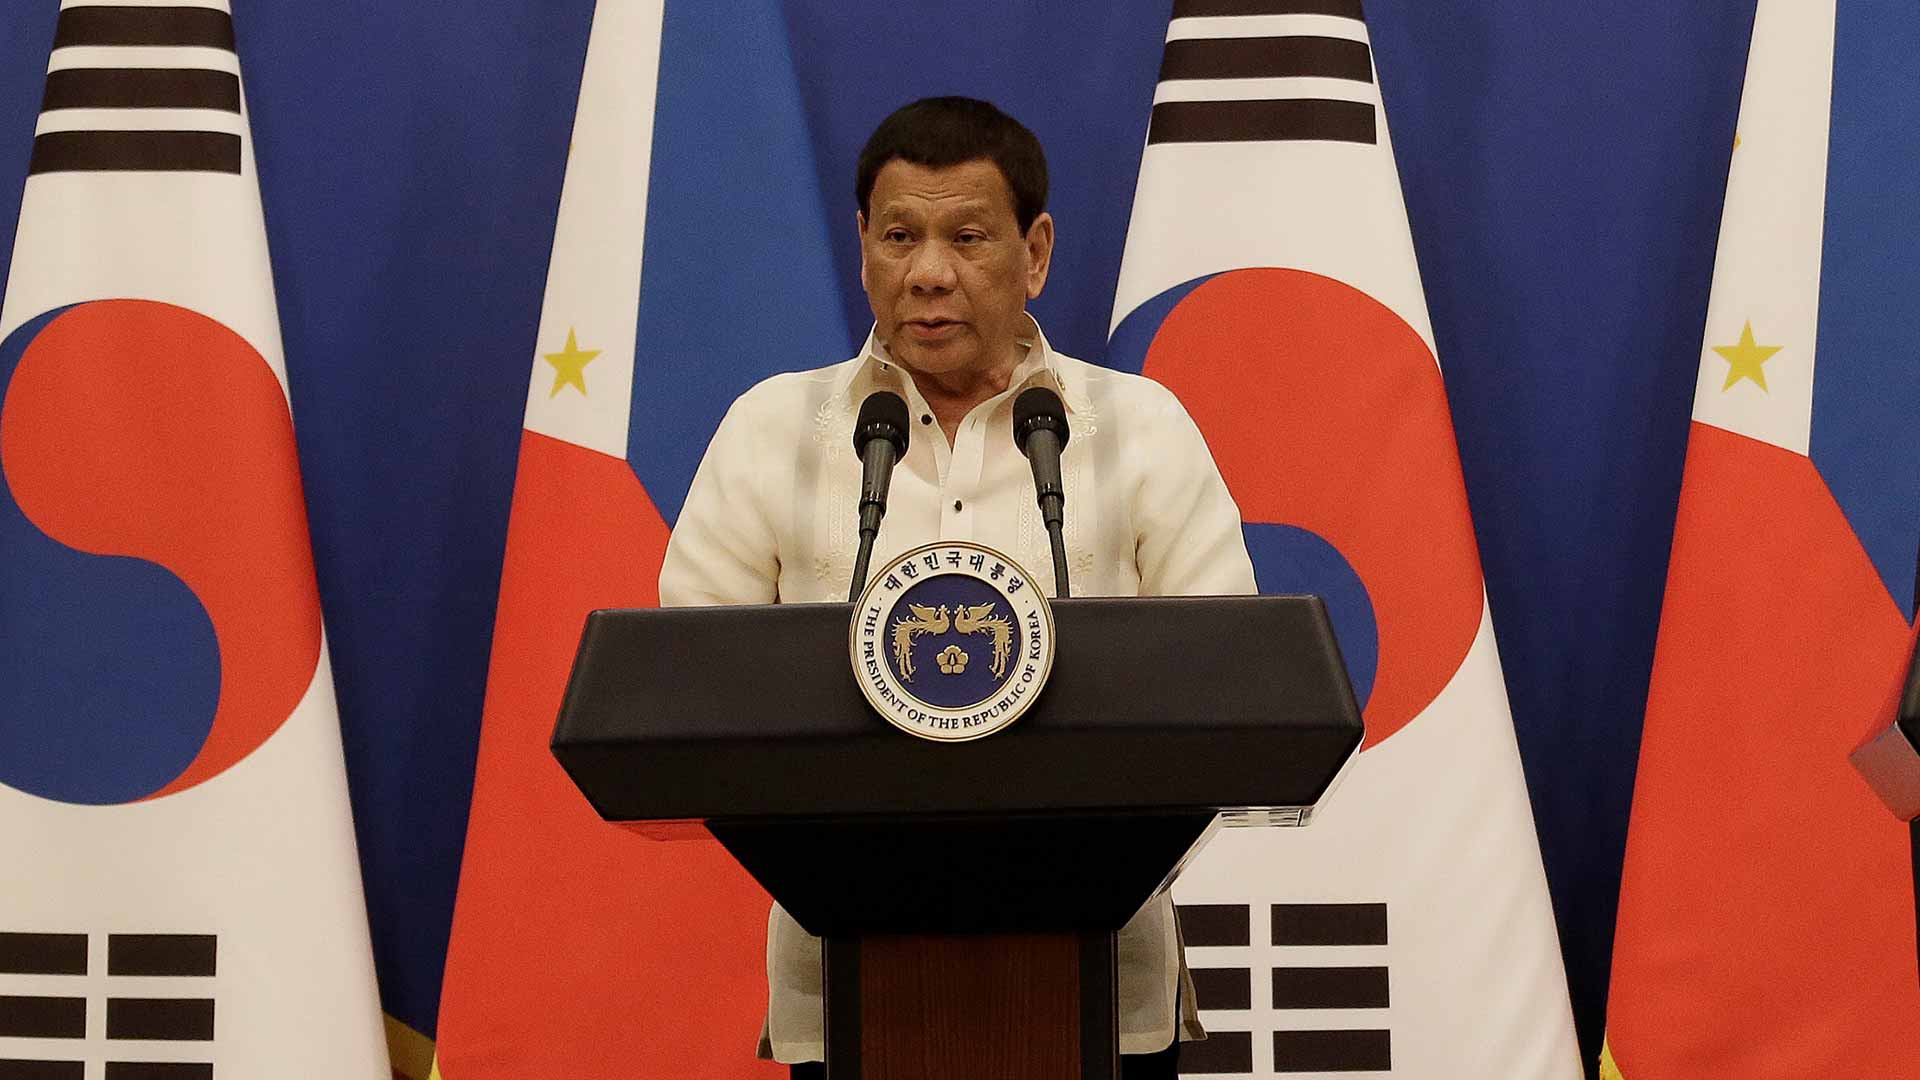 Duterte obliga a una mujer a darle un beso en los labios durante un acto público